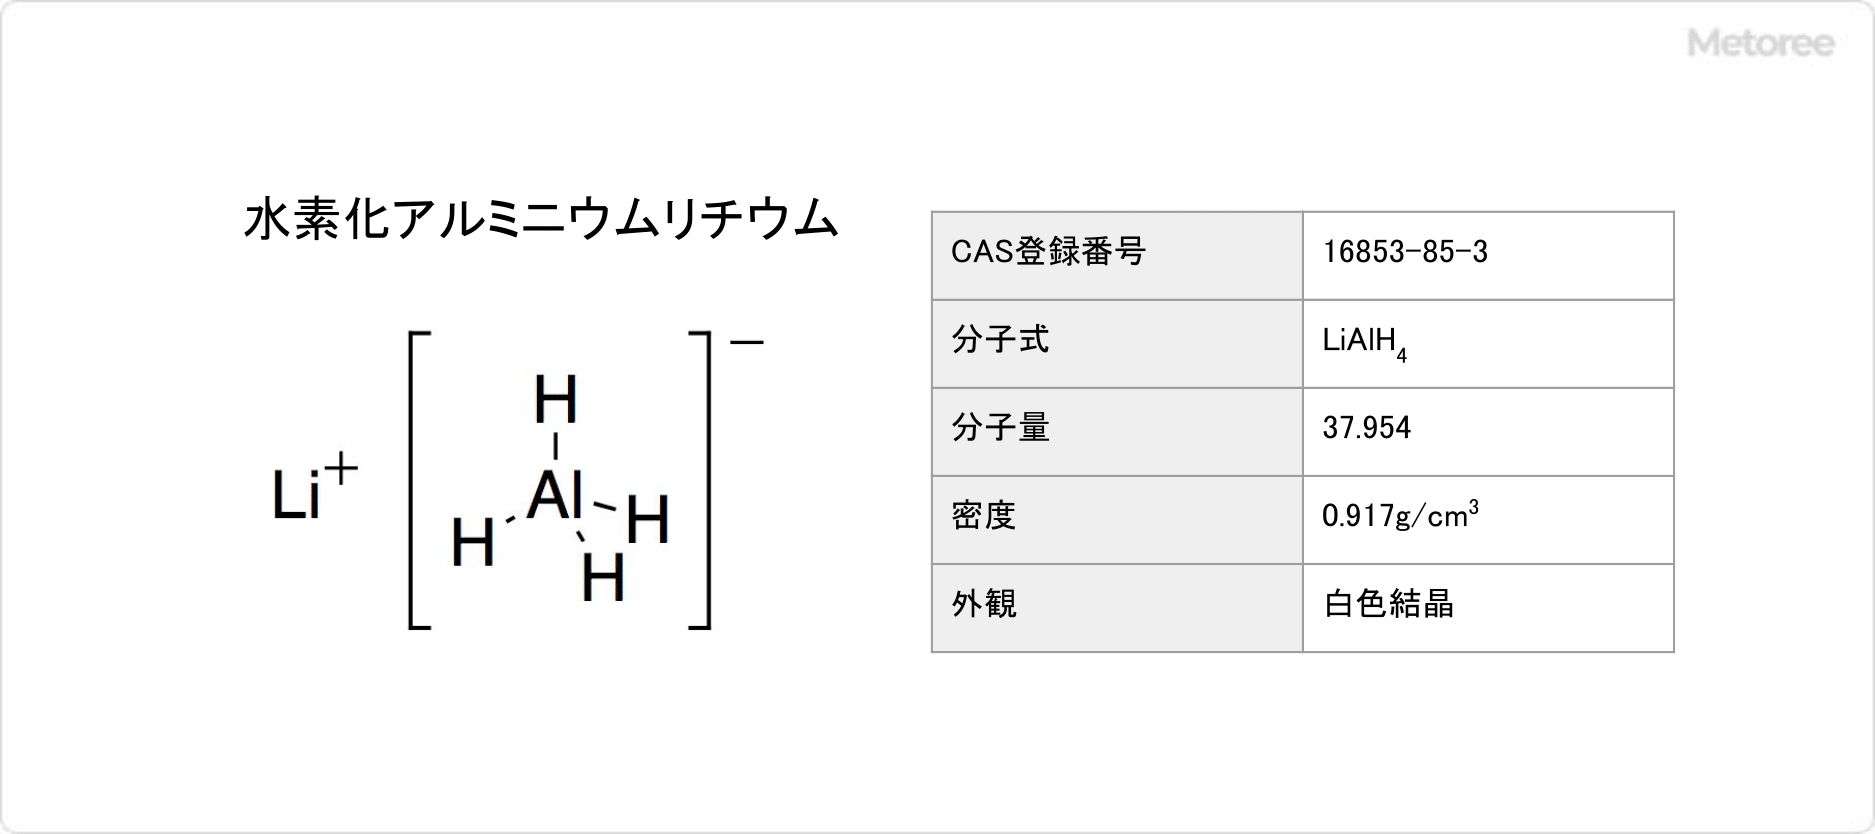 水素化アルミニウムリチウムの基本情報